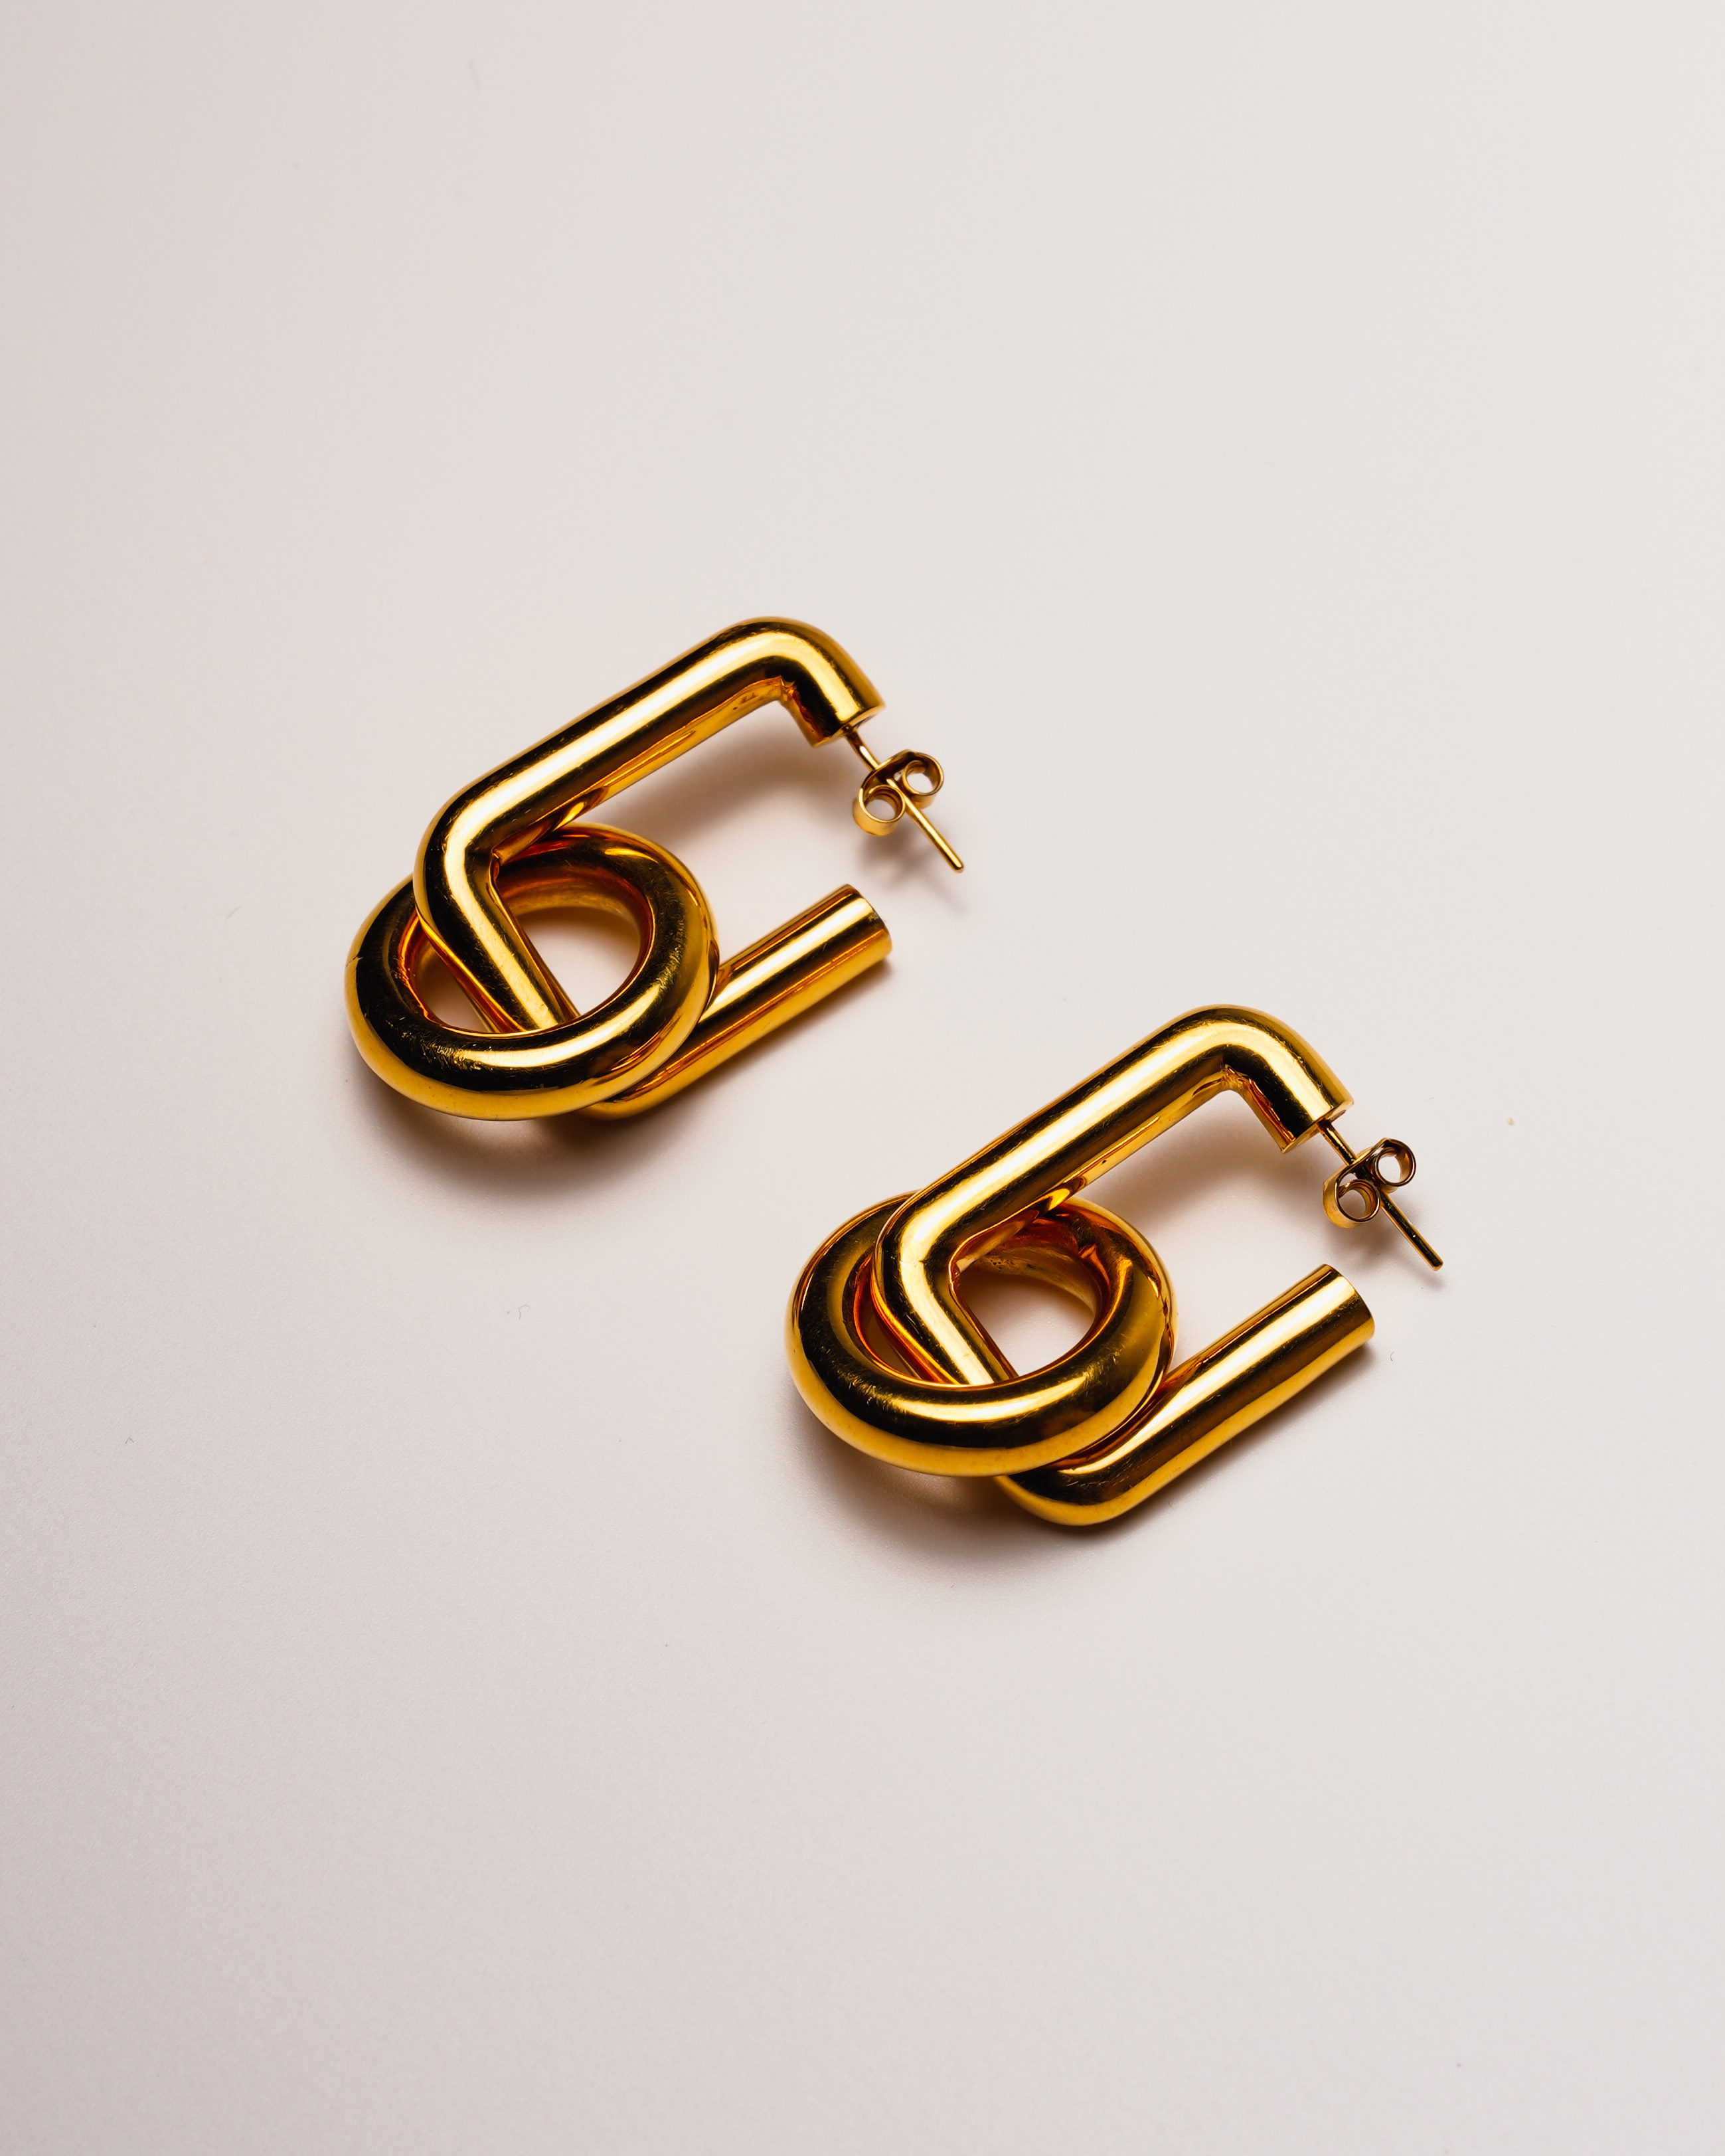 24K yellow gold vermeil earrings in 925 silver